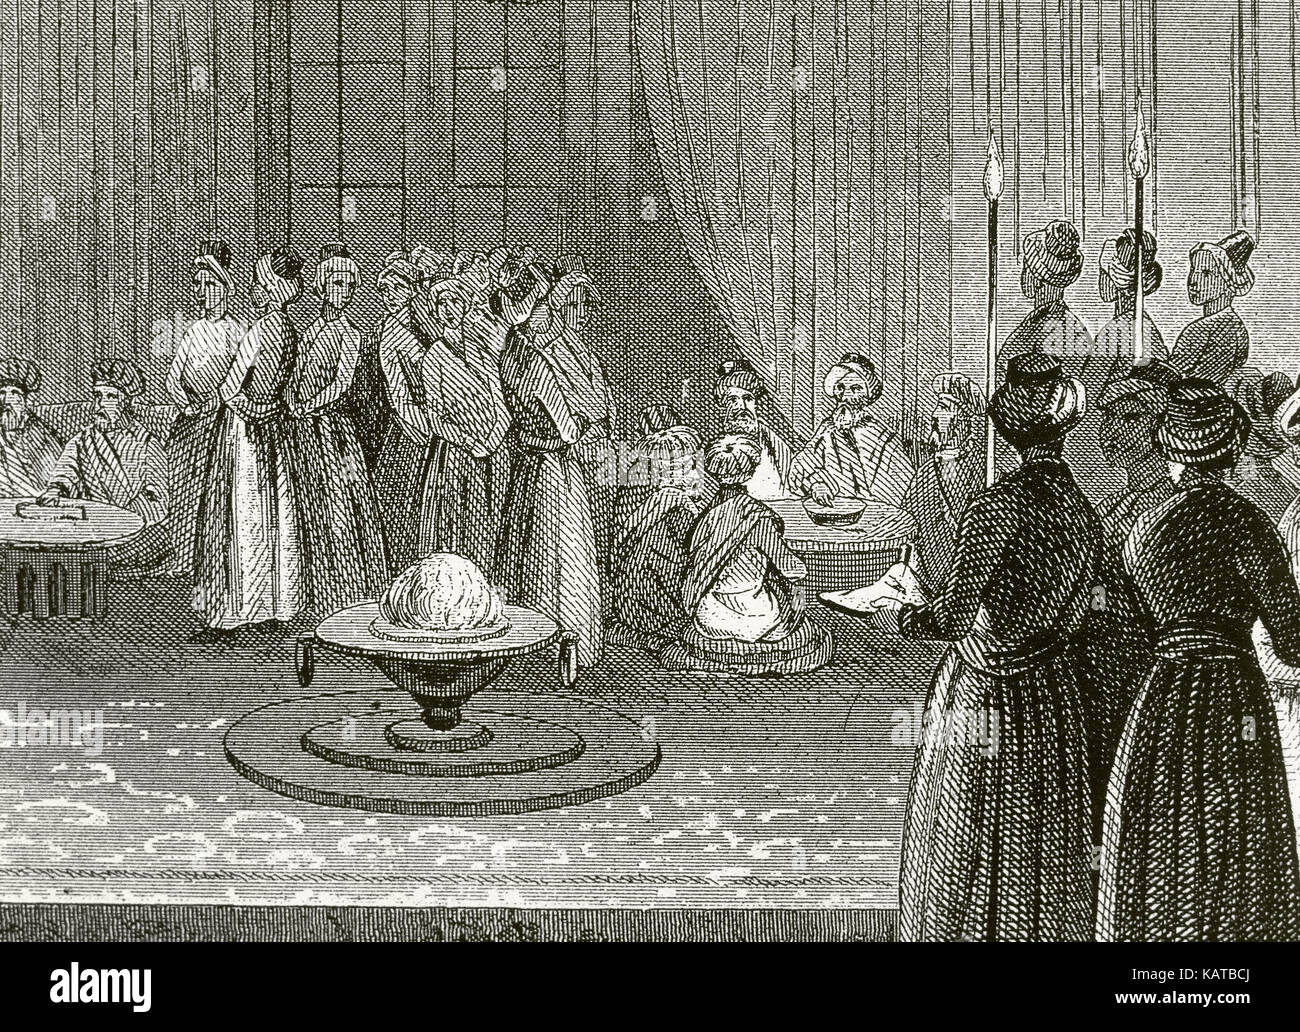 Impero ottomano. Banchetto tenutosi presso la corte del Palazzo Topkapi. Incisione. Xix secolo. Foto Stock